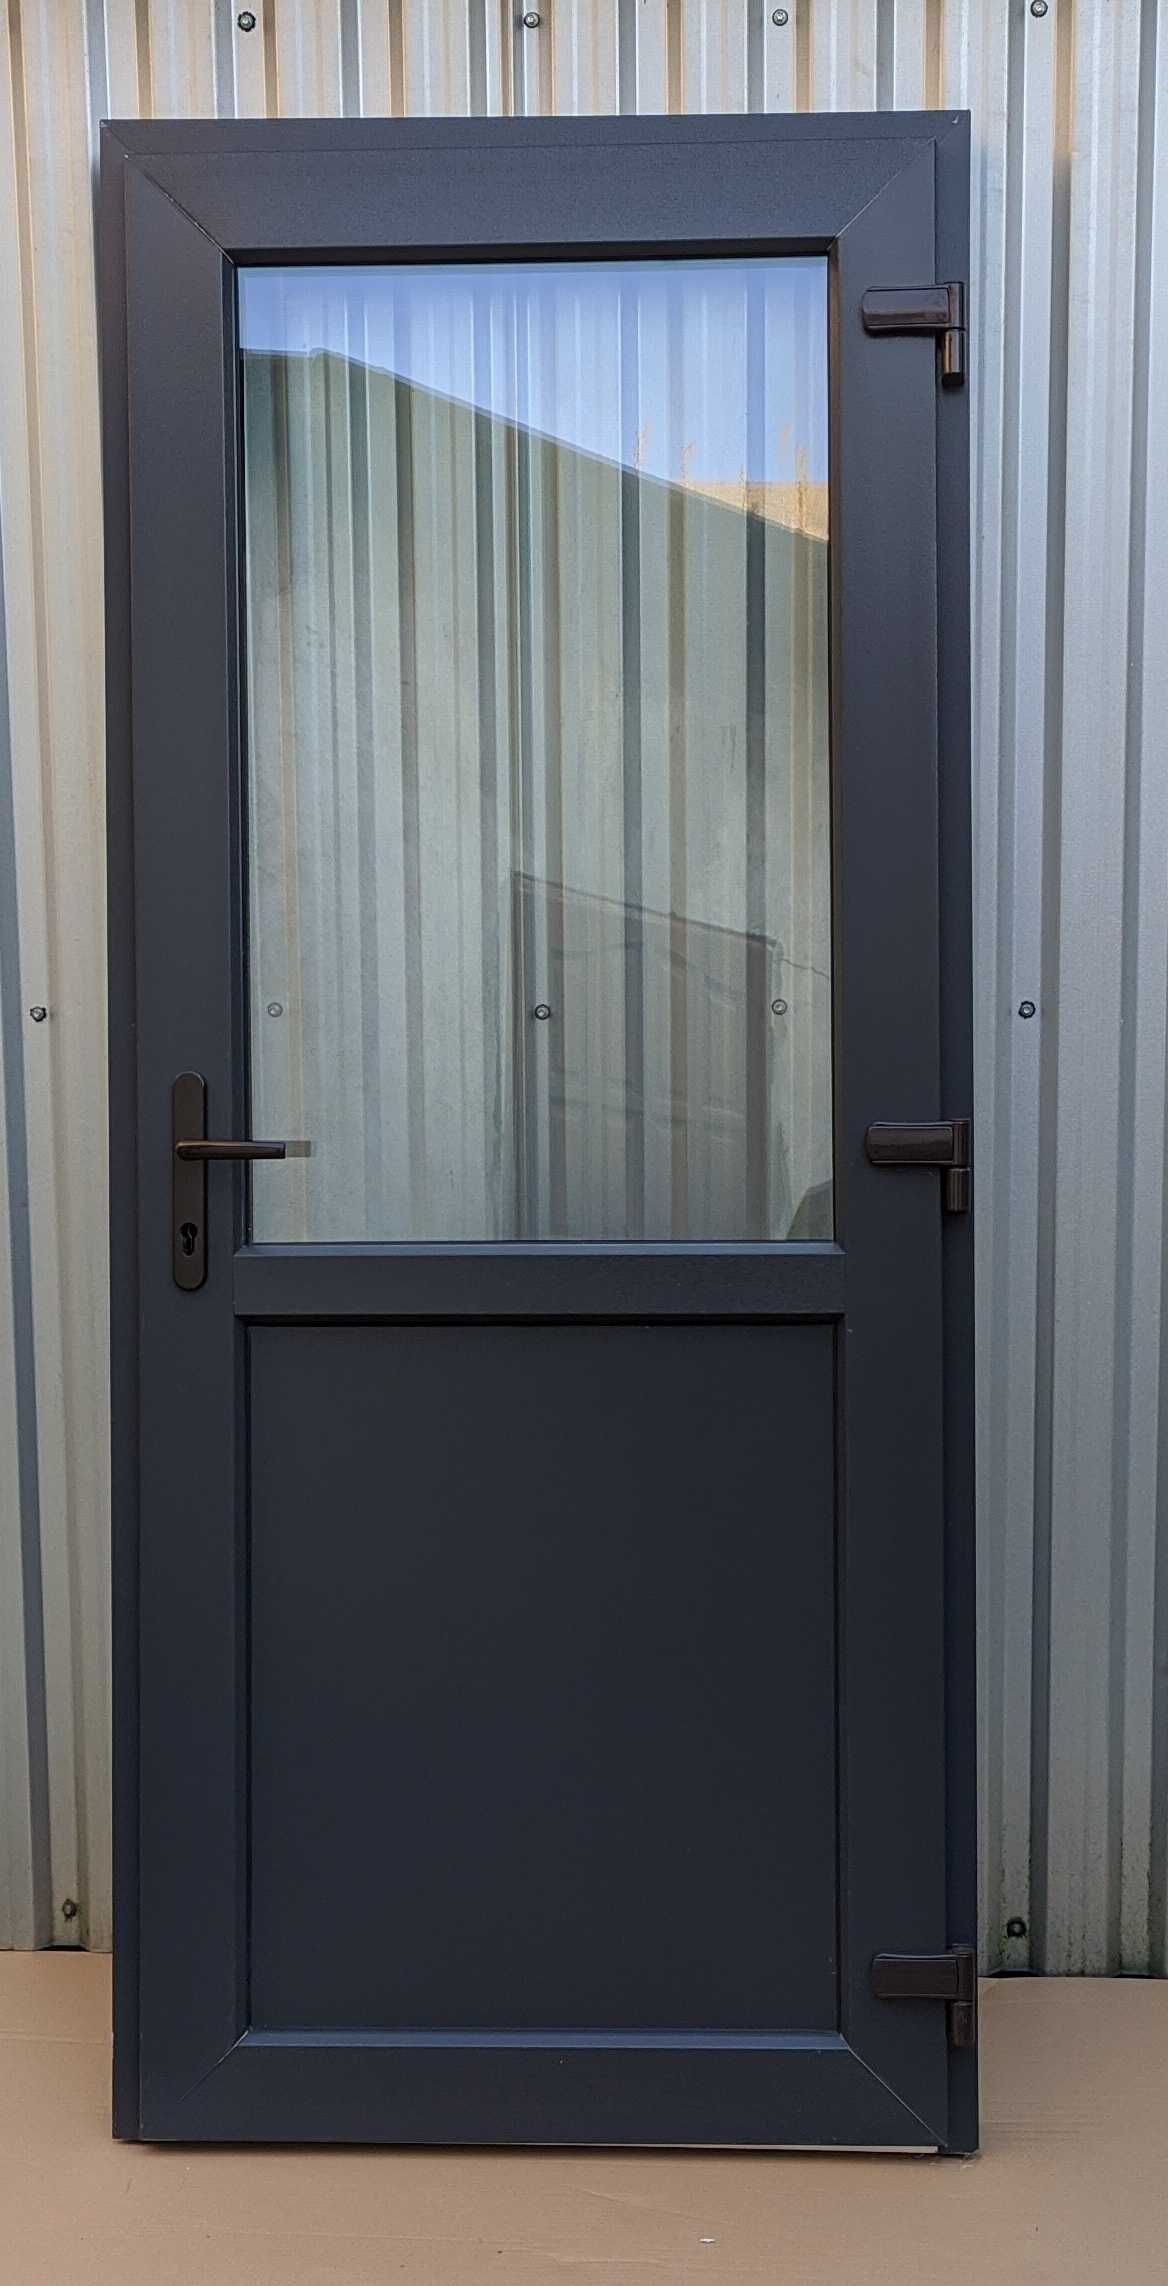 Drzwi PCV 105x210 antracyt zewnętrzne sklepowe tarasowe jak ALUMINIOWE